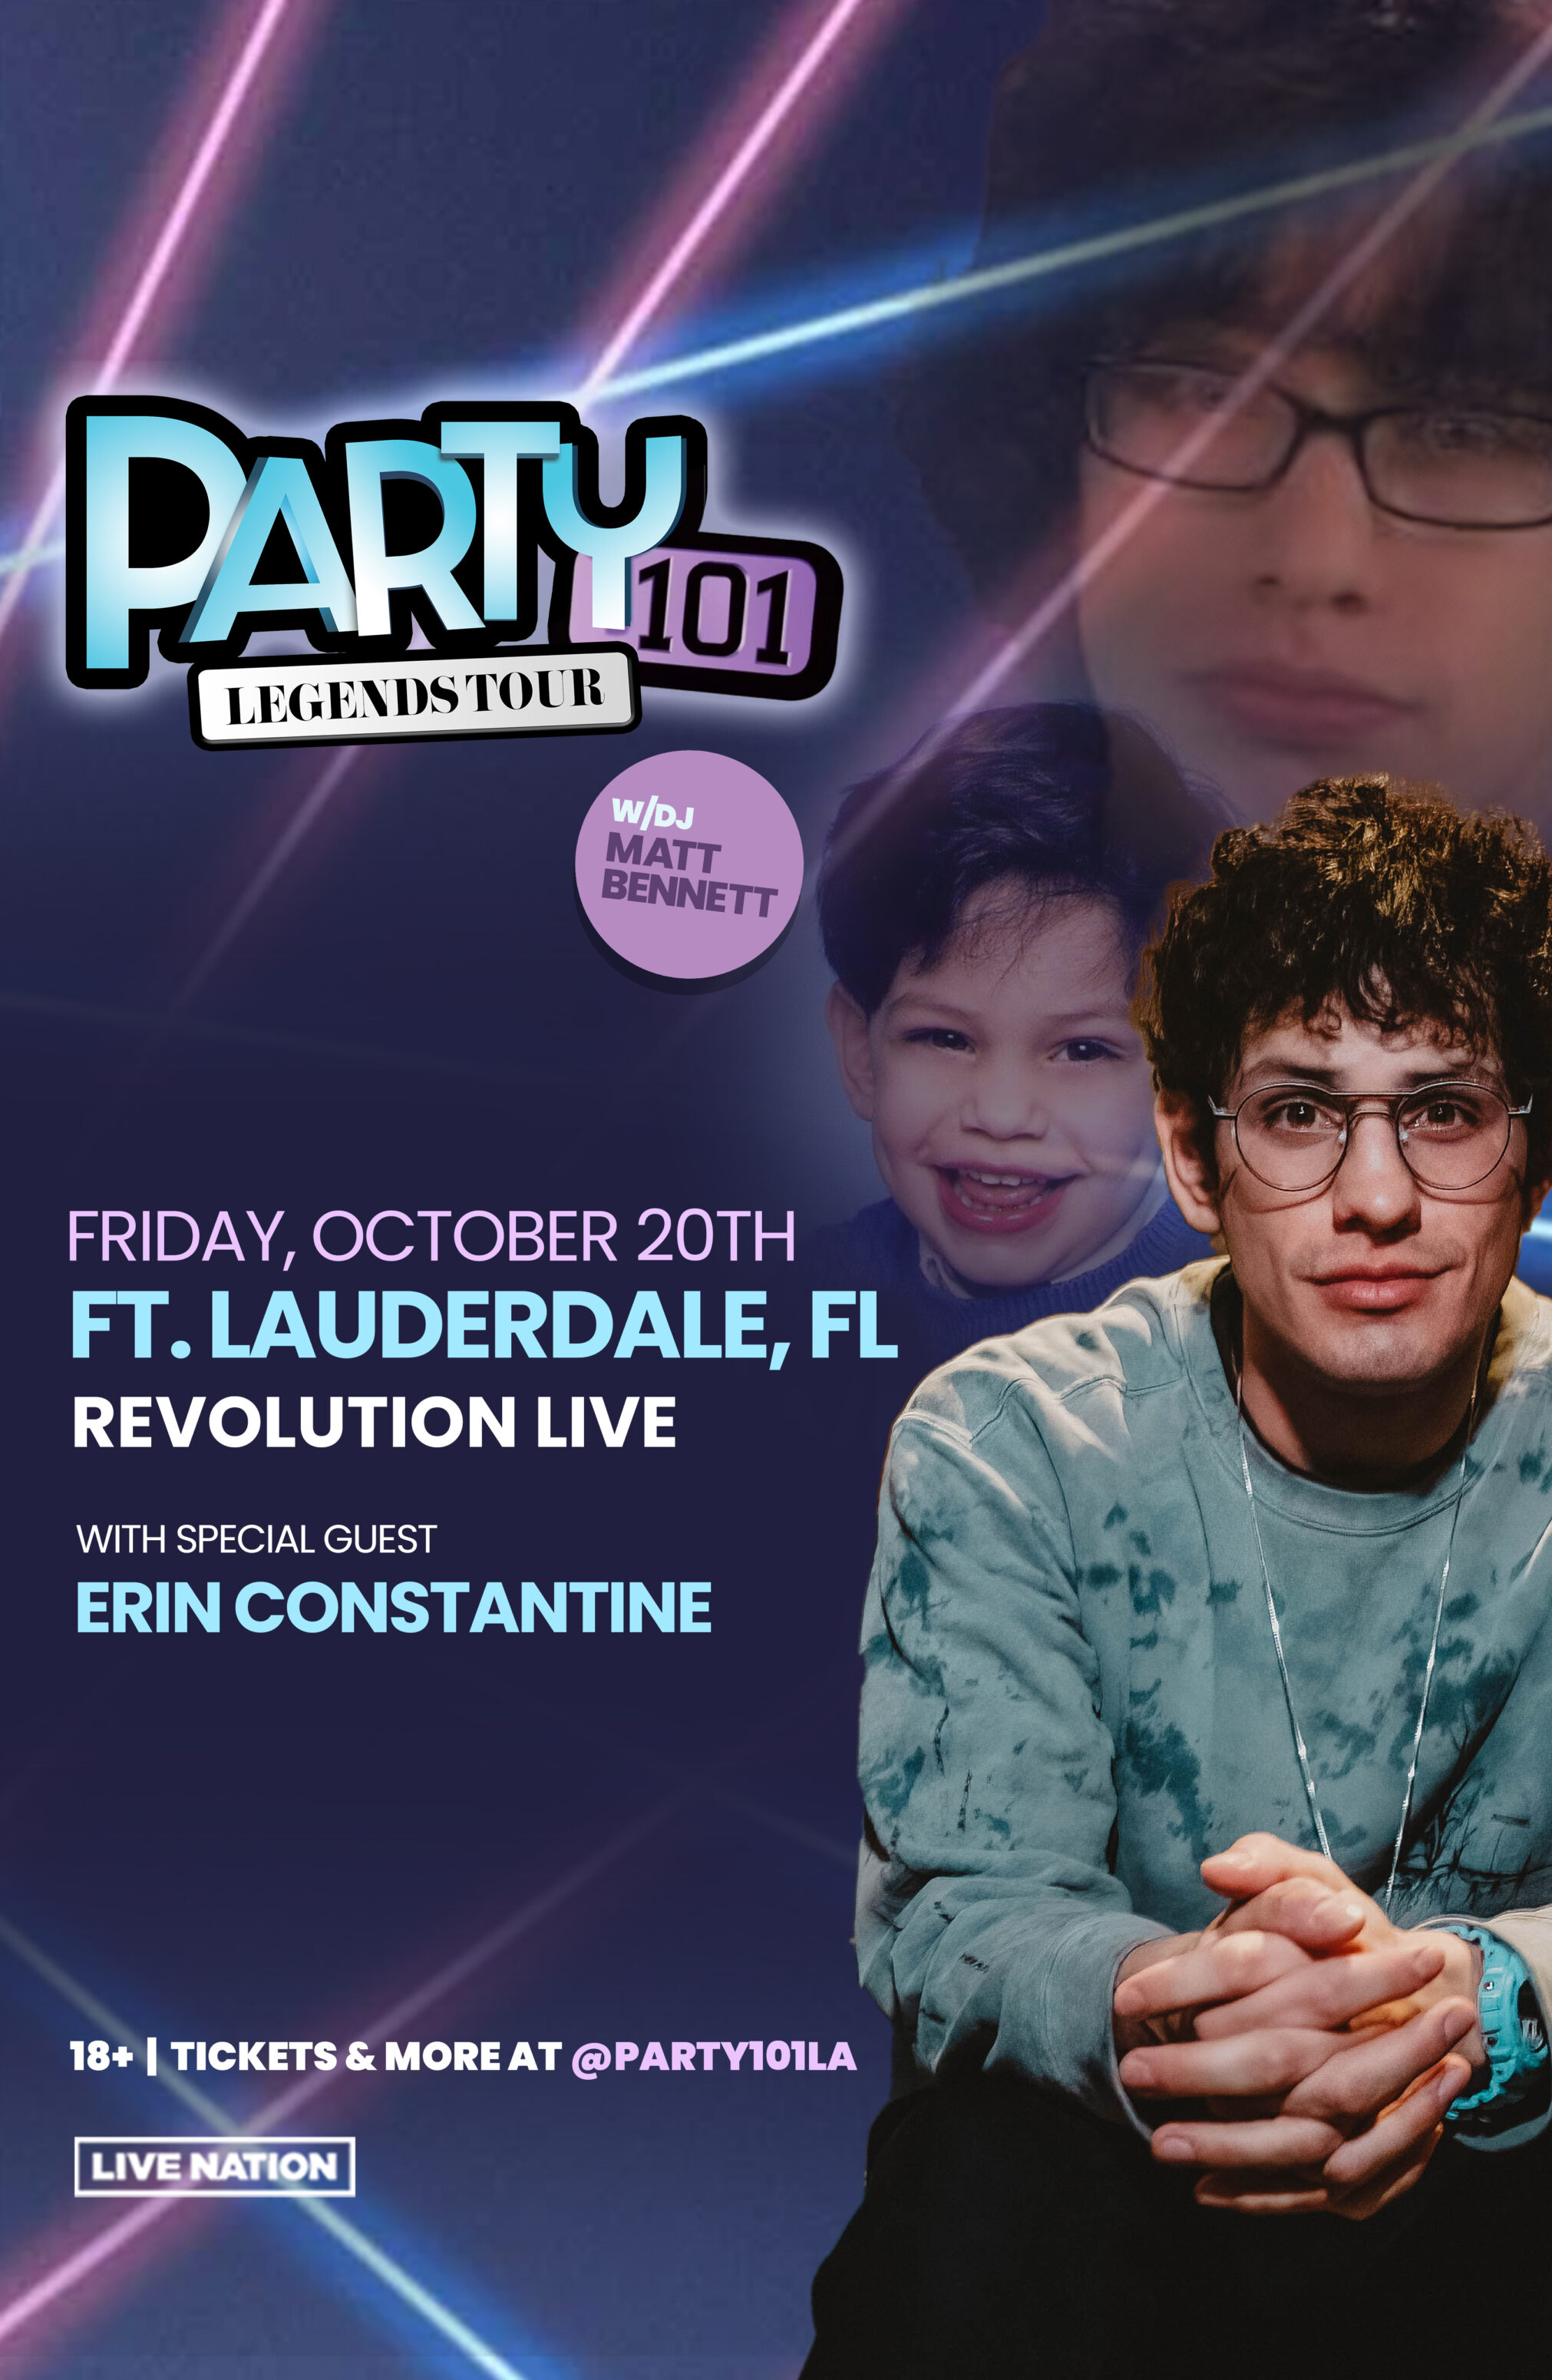 The Party101 Legends Tour with DJ Matt Bennett - Revolution Live